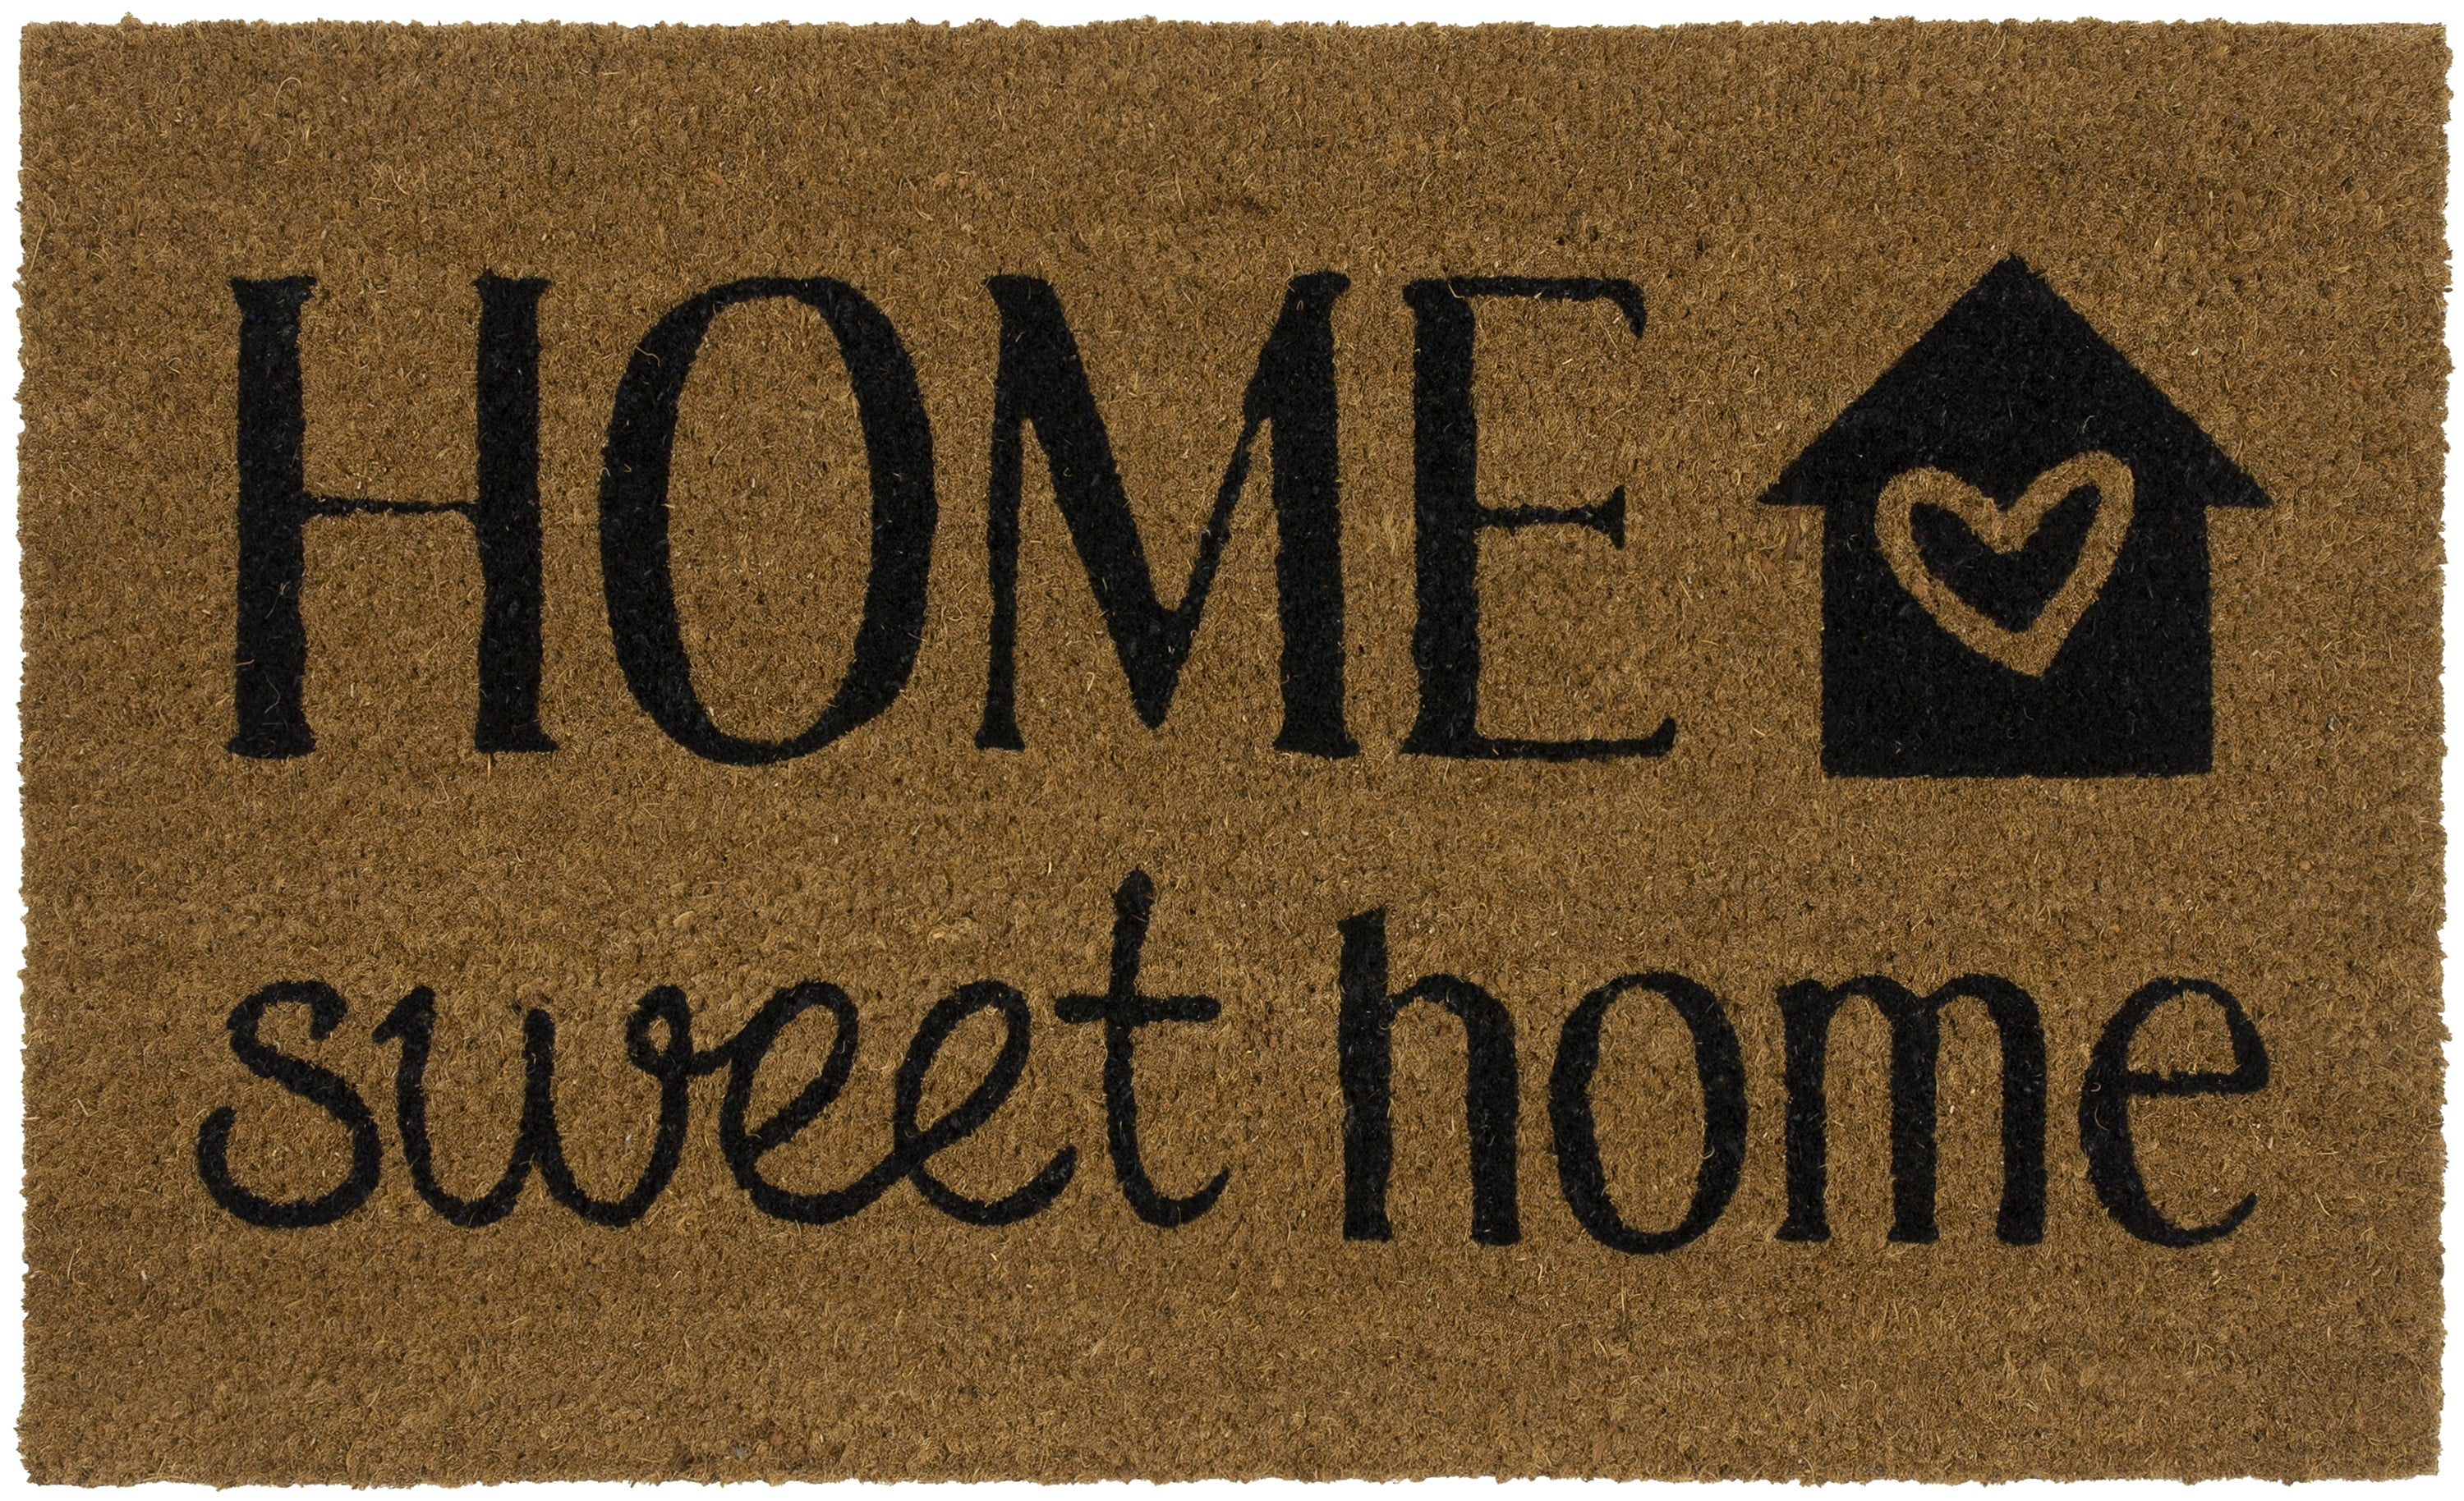 Coco Mats N More Coir Home Sweet Home Doormat